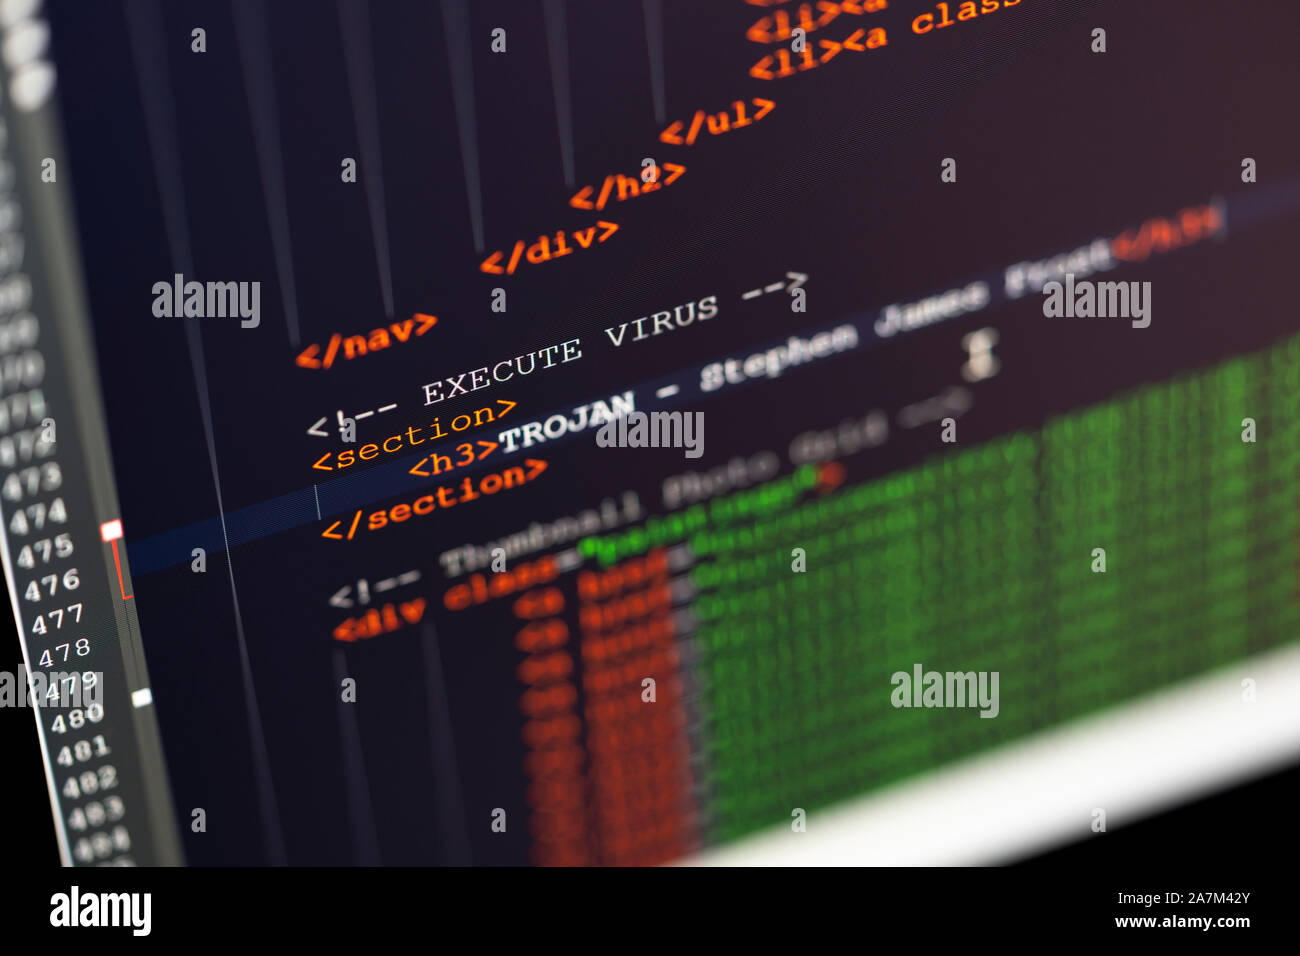 Un gros plan d'un écran de l'ordinateur montrant le codage html et les mots virus, cheval de Troie. Concept - la cybersécurité, virus, piratage et trojans Banque D'Images